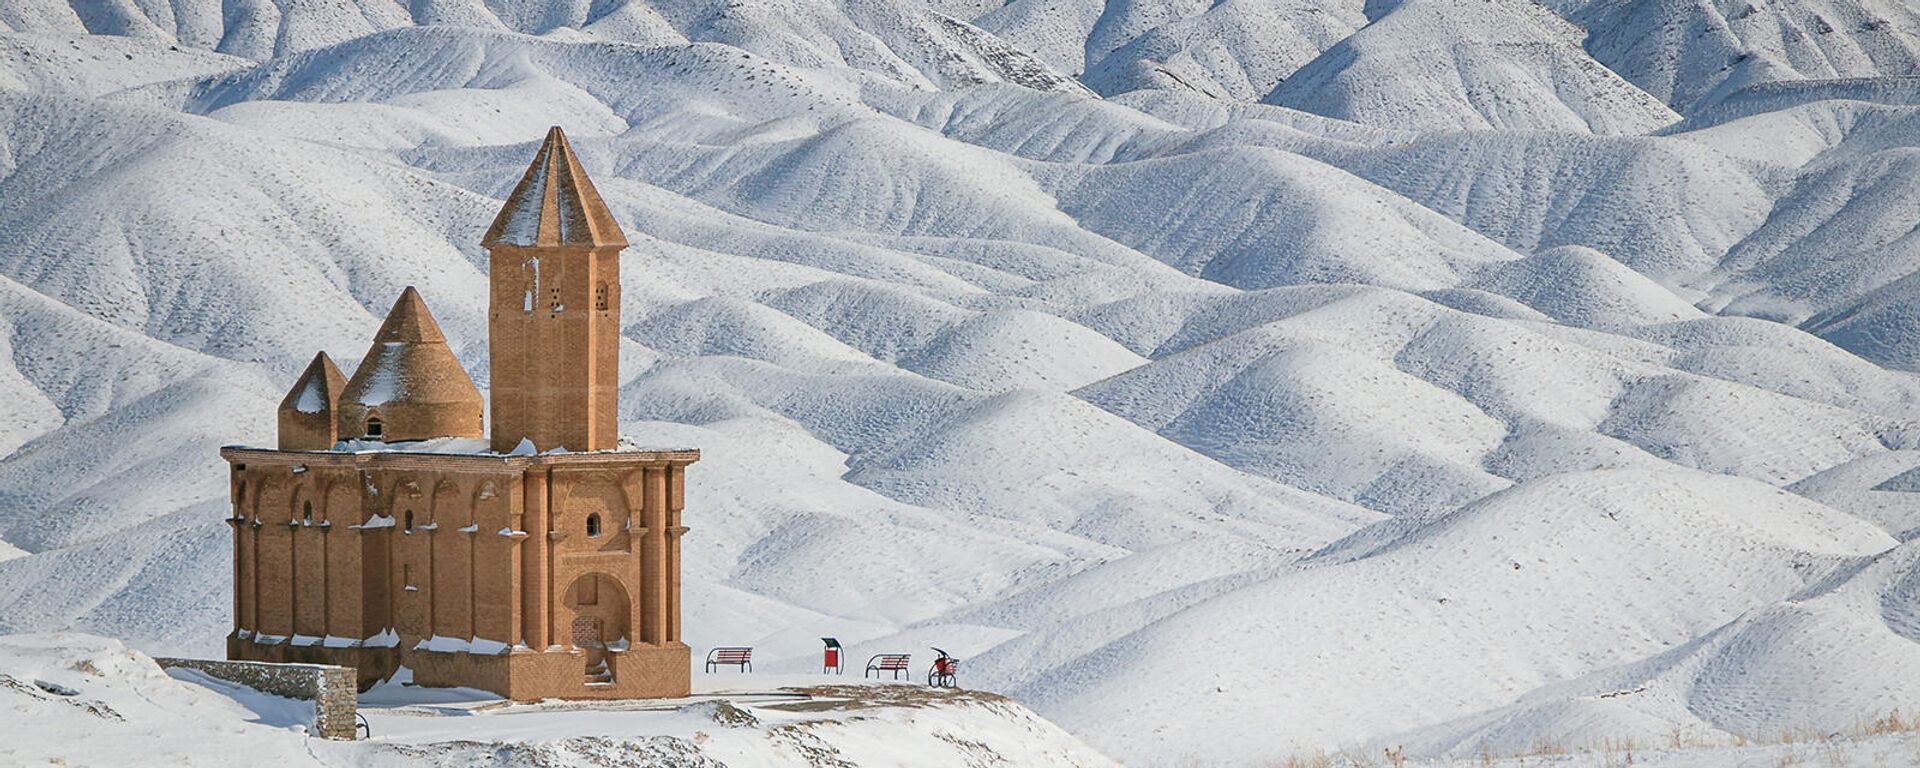 Армянская католическая церковь Святого Иоанна в Сохроле, Иран - Sputnik Армения, 1920, 19.12.2021